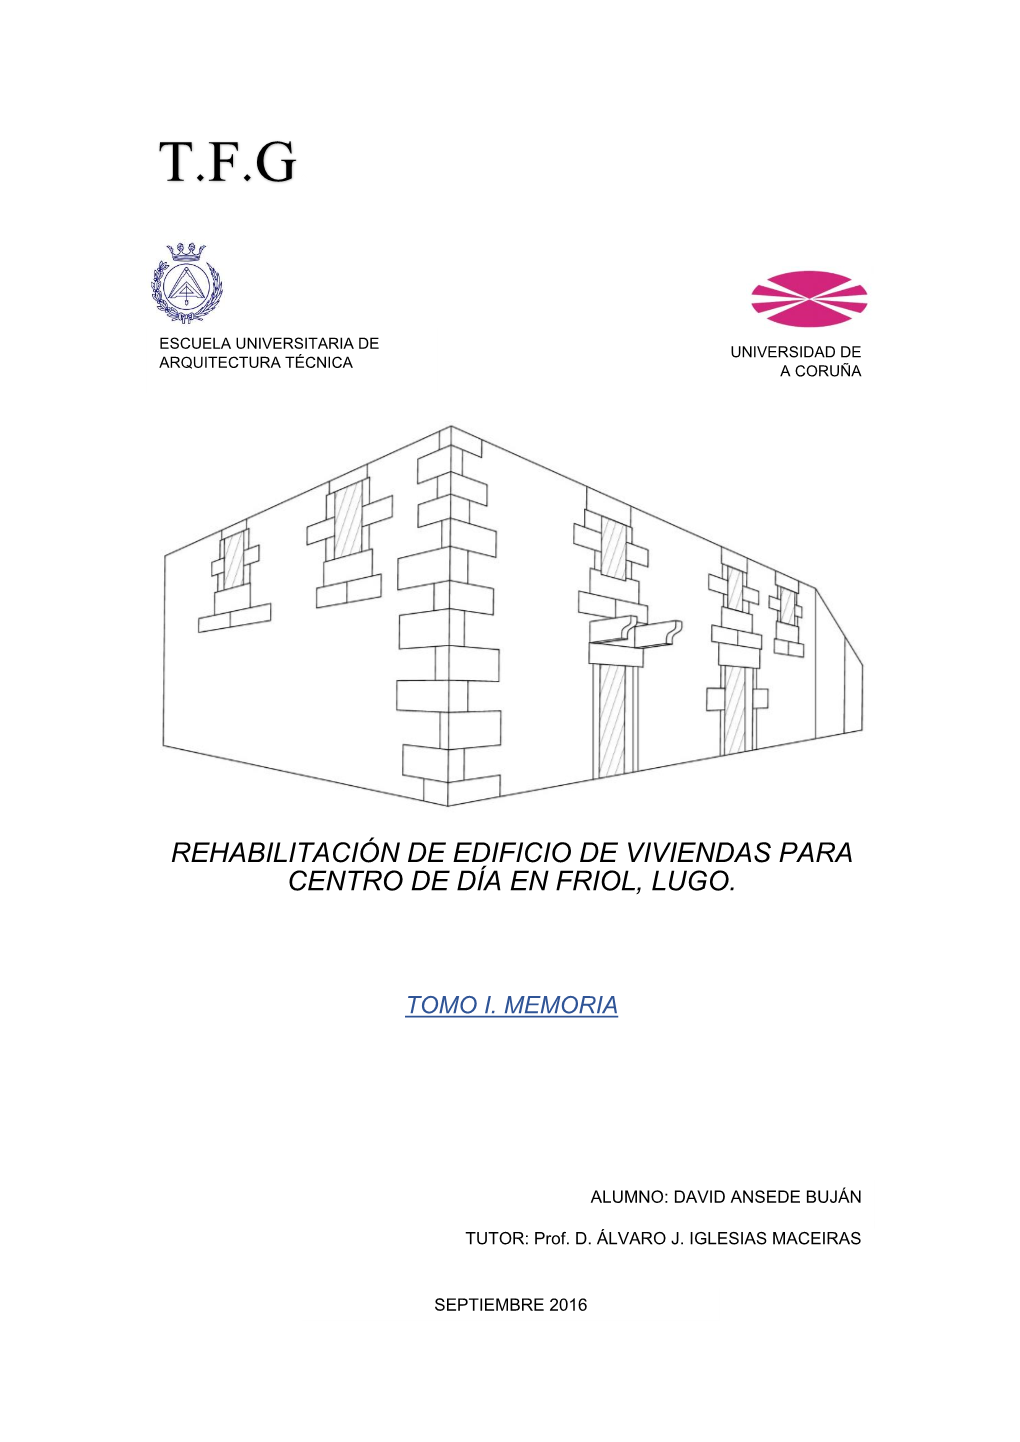 Rehabilitación De Edificio De Viviendas Para Centro De Día En Friol, Lugo